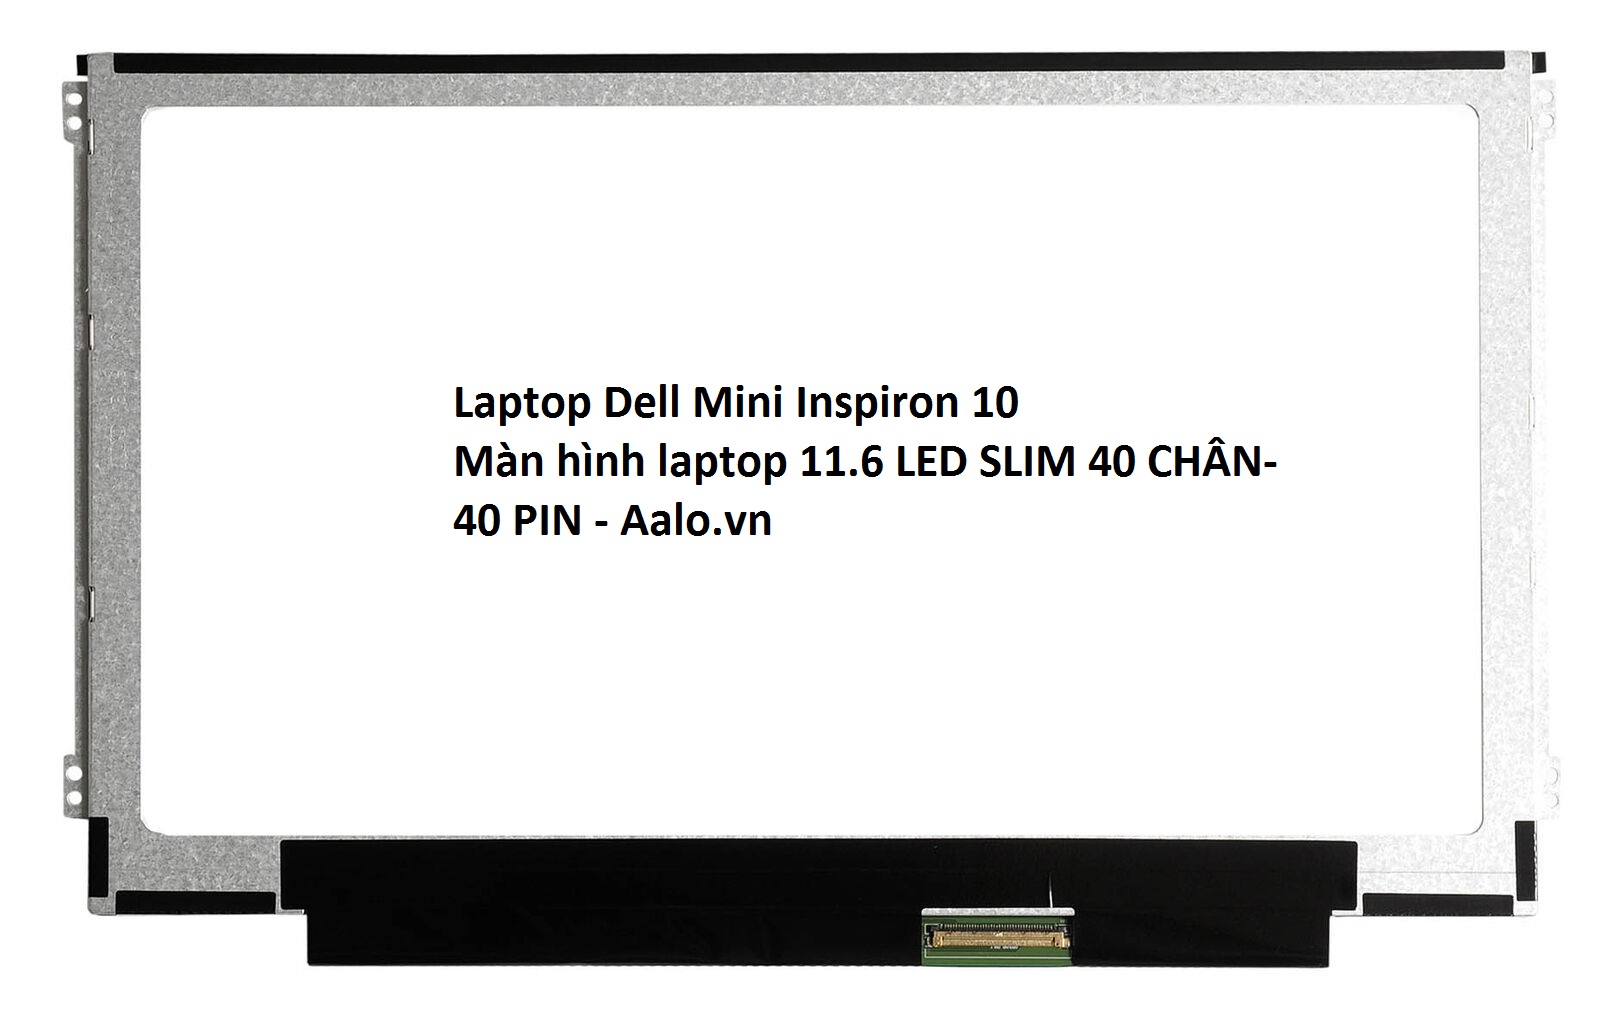 Màn hình Laptop Dell Inspiron 1121 - Aalo.vn